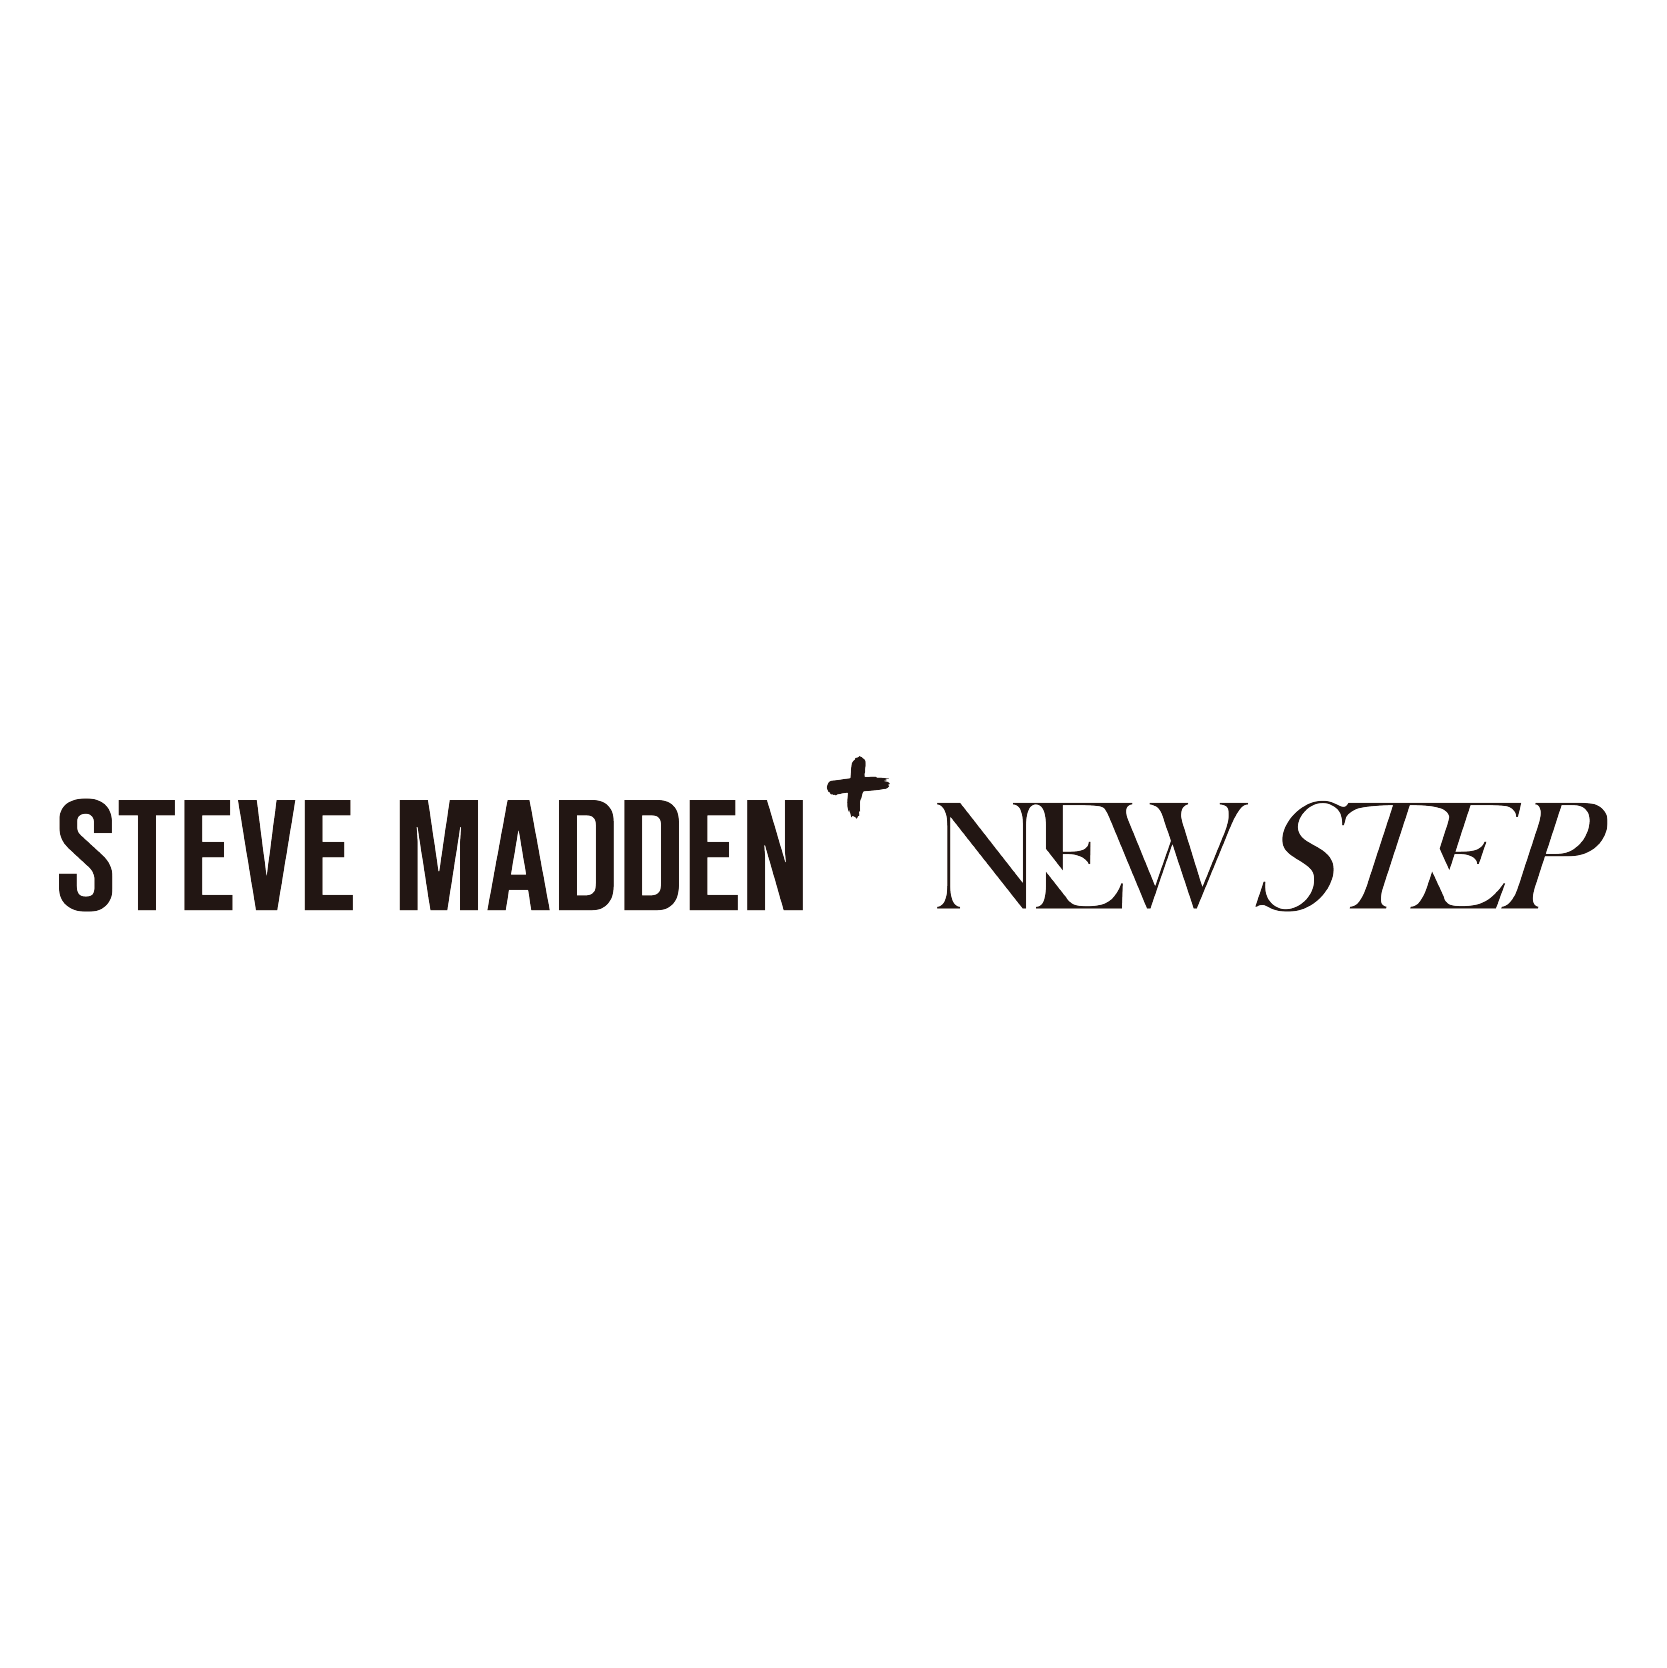 Steve Madden+ Newstep